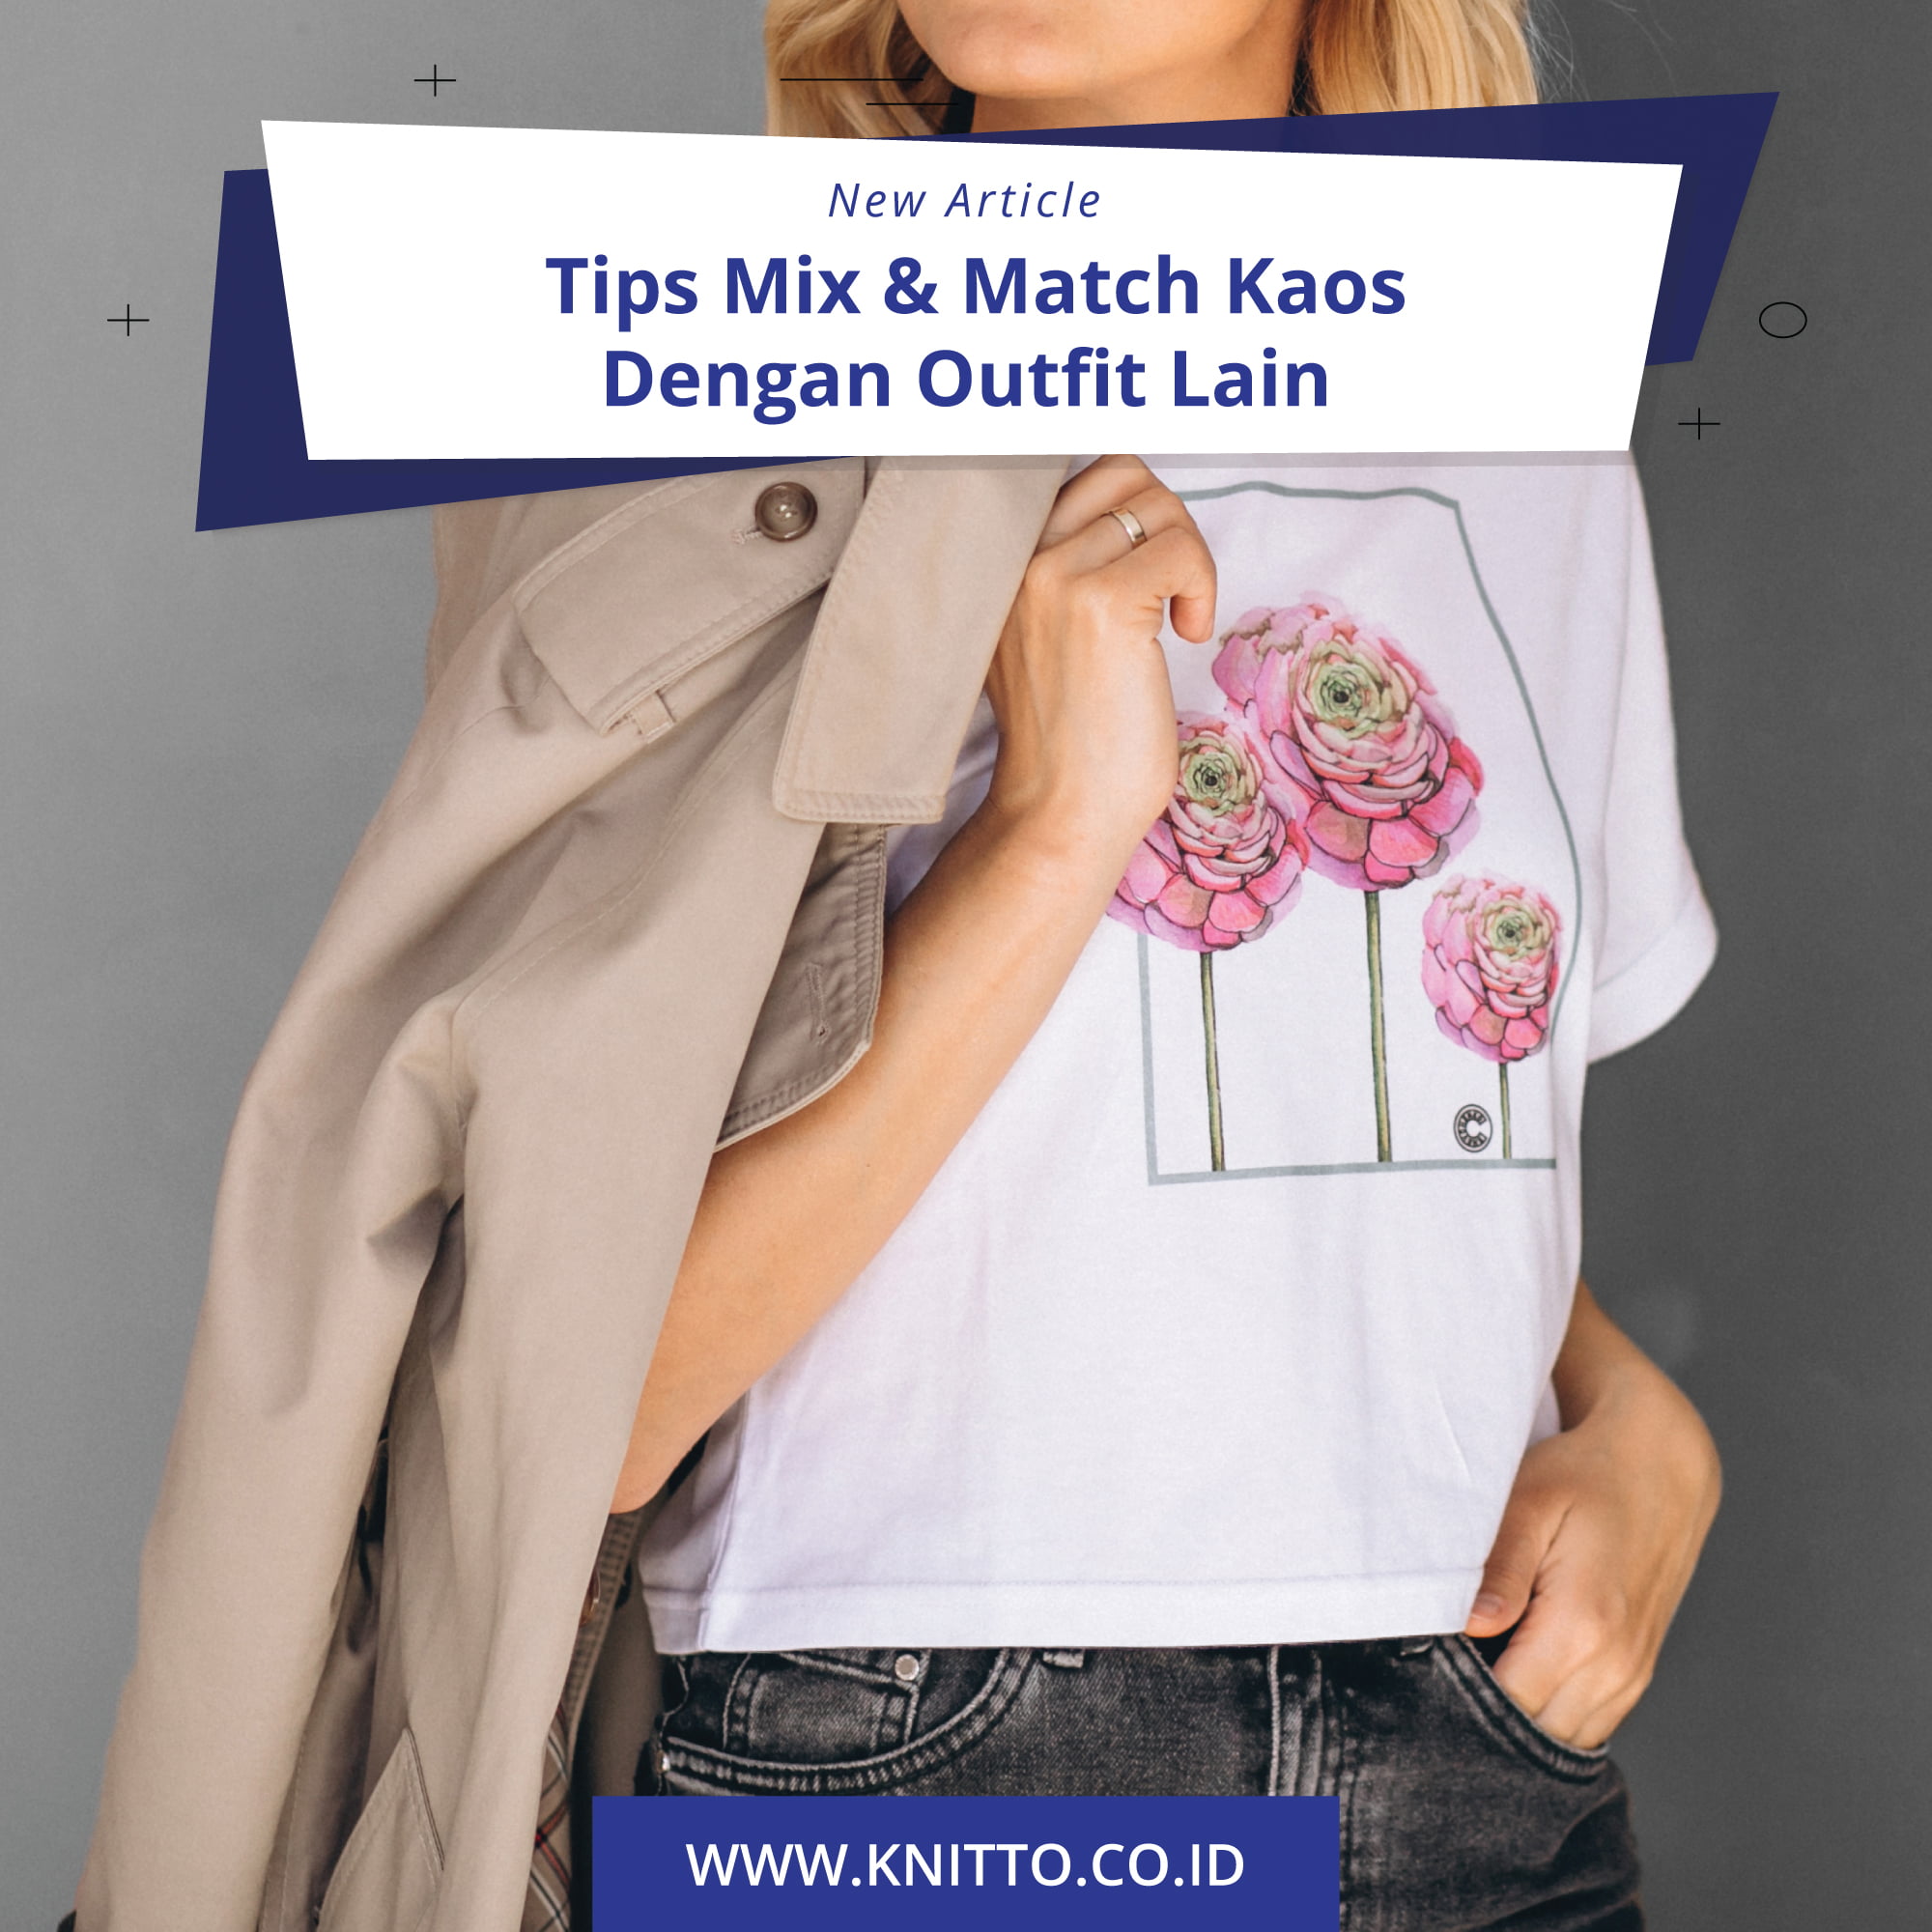 Article Tips Mix Match Kaos Dengan Outfit Lain Feeds